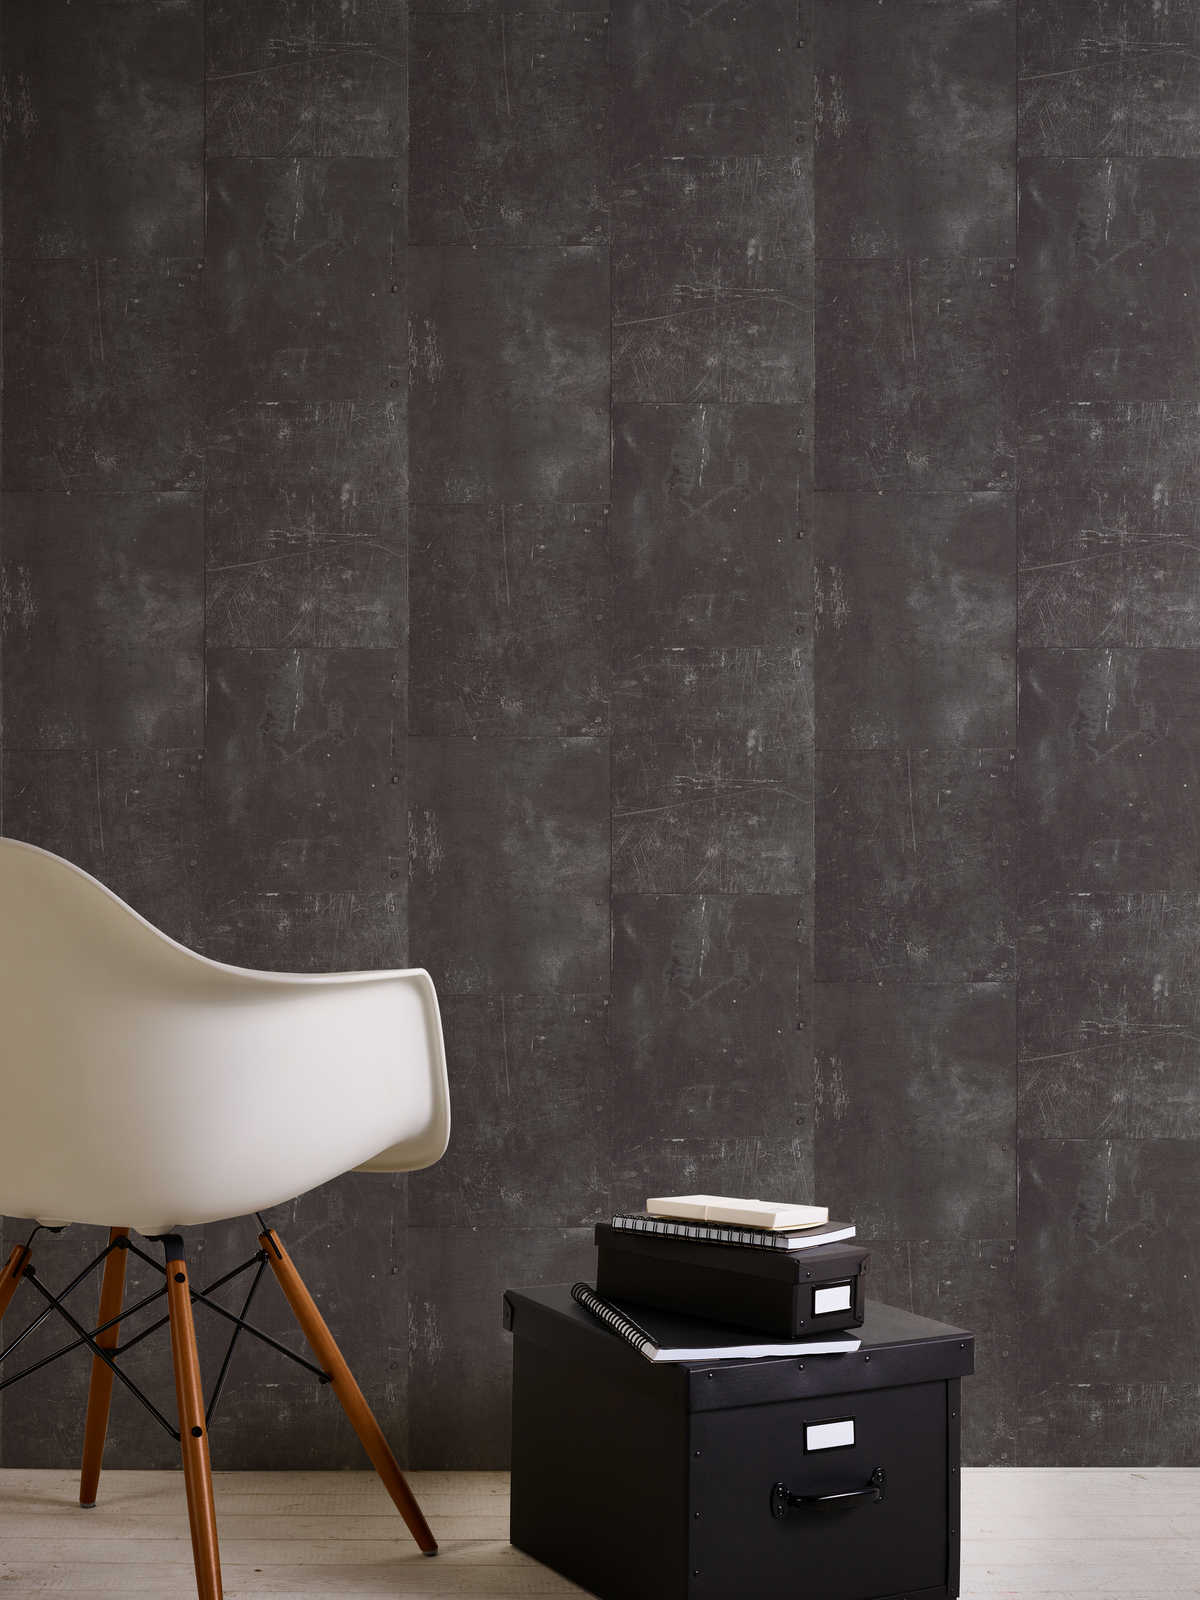             Metal look wallpaper iron sheets & rivets - black
        